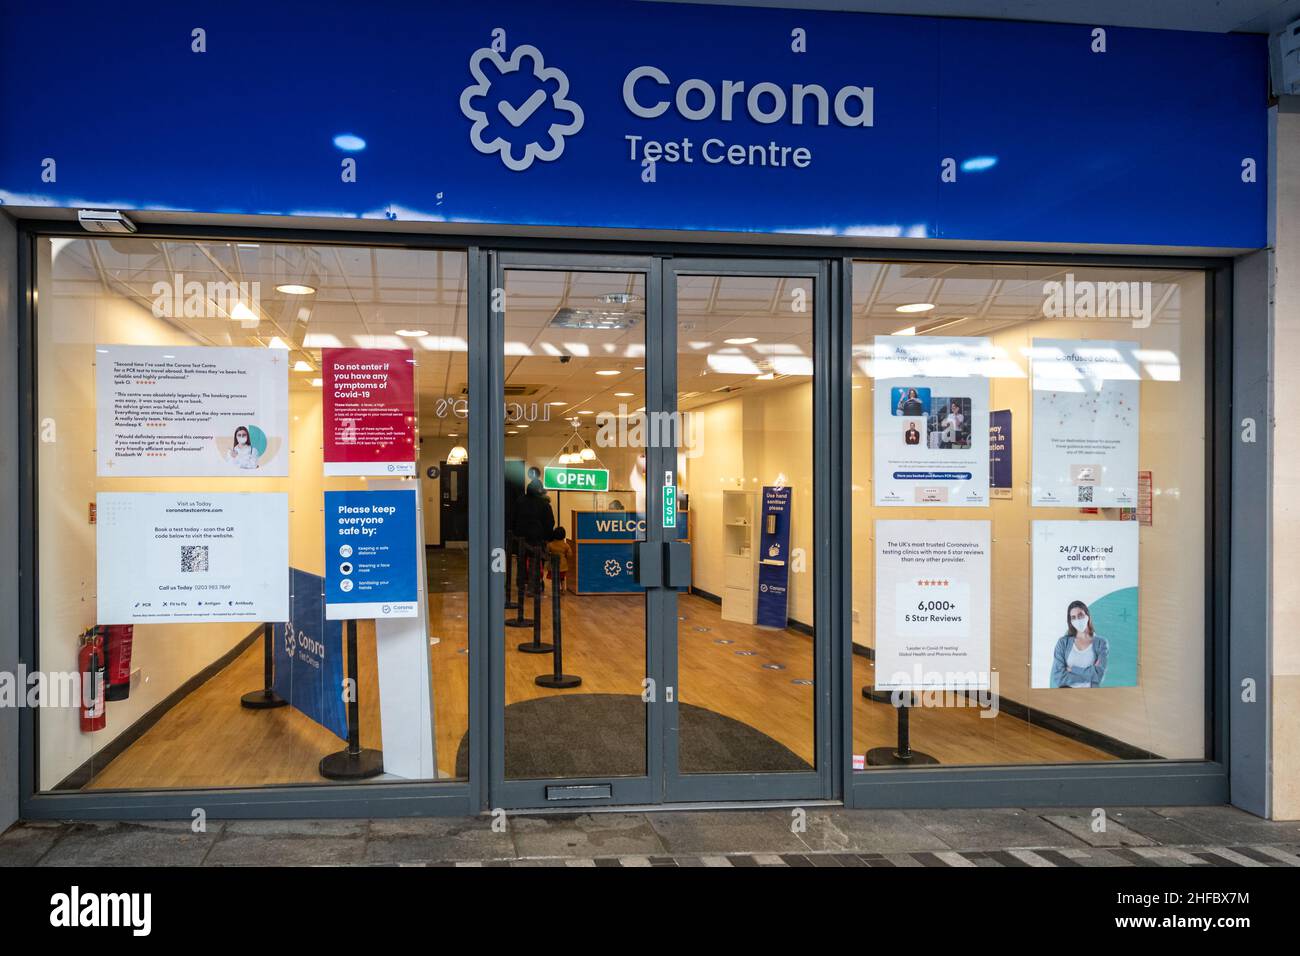 Januar 2022. Ein Corona-Testzentrum im Stadtzentrum von Woking, Surrey, Großbritannien, das PCR-Tests auf das Covid-19-Coronavirus an asymptomatischen Menschen vor und nach einer Auslandsreise durchführt. Stockfoto